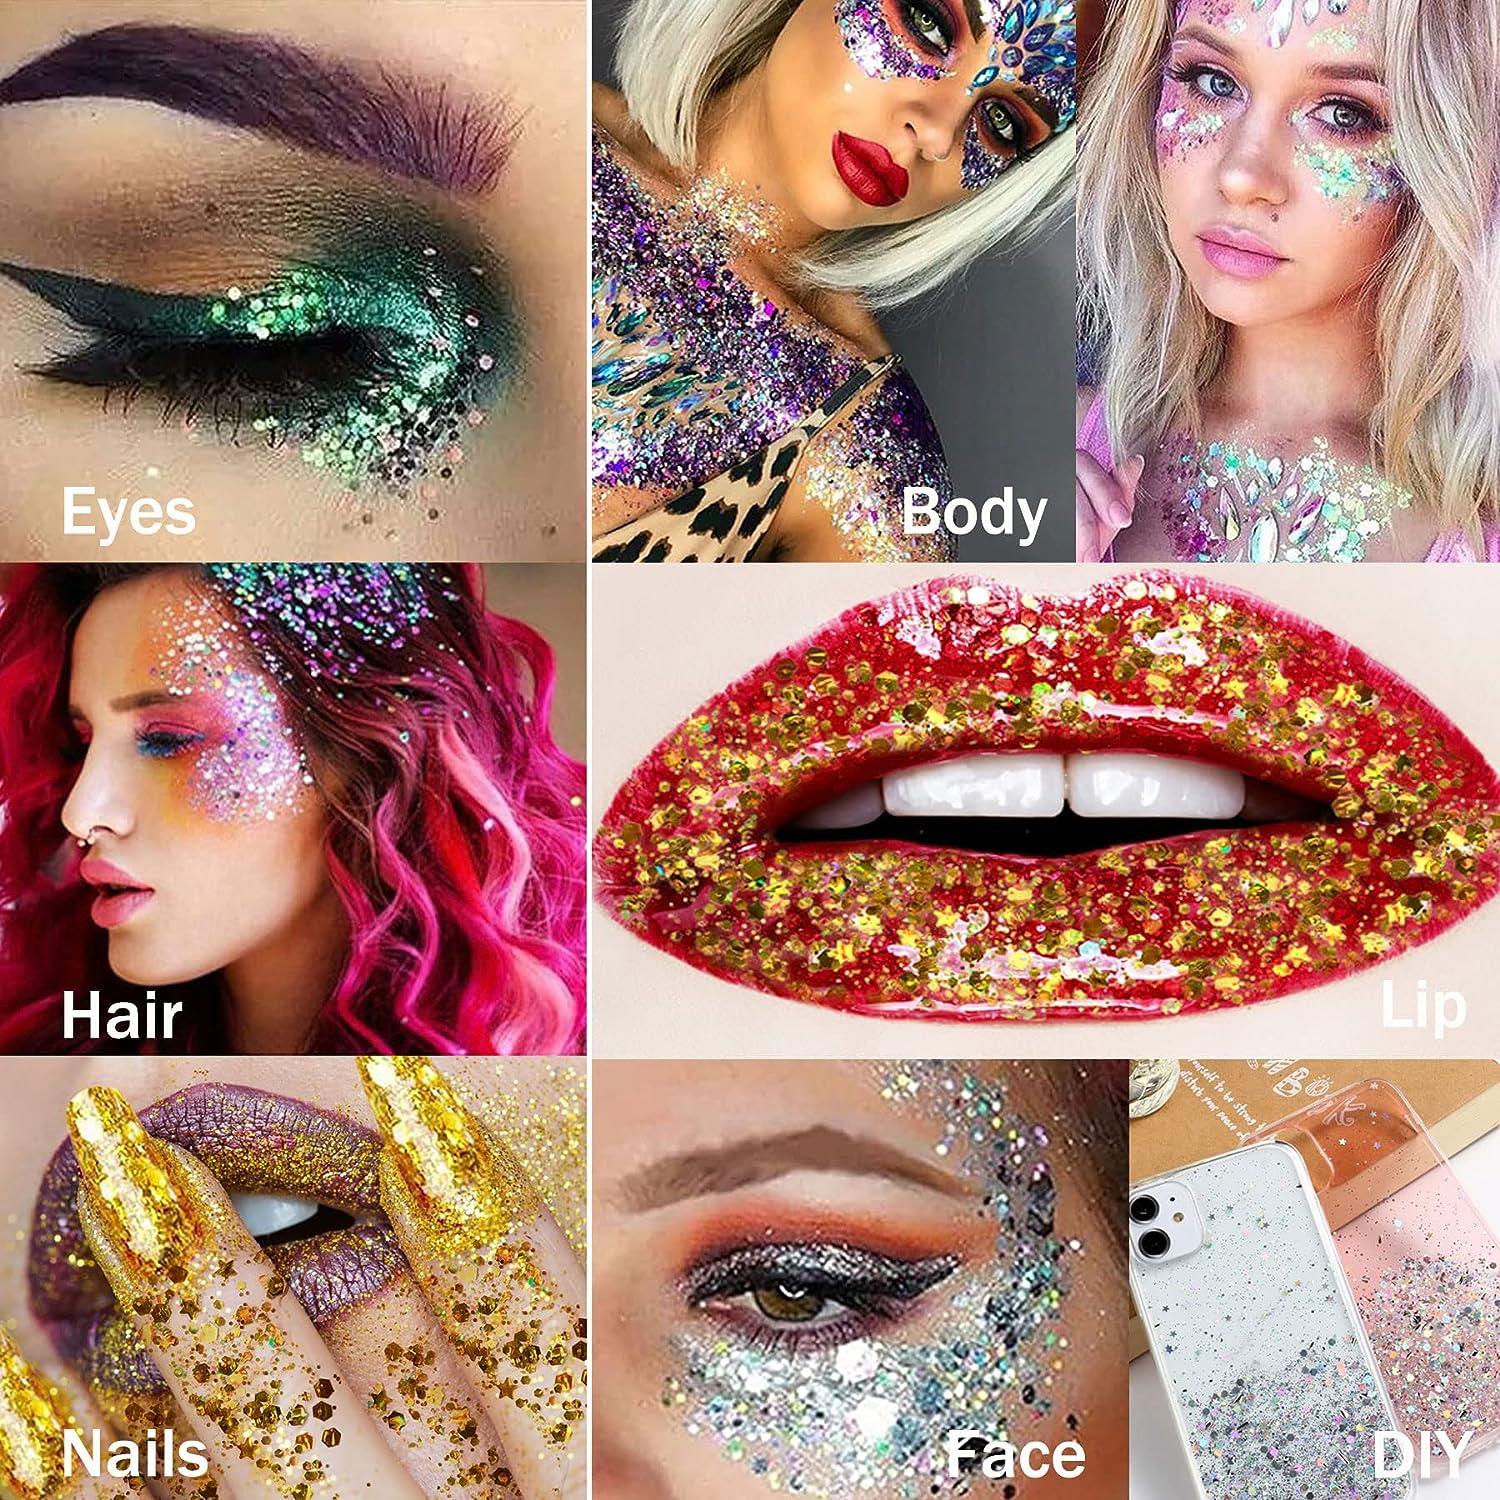 Makeup  Face, Eye, Lip, and Body Makeup